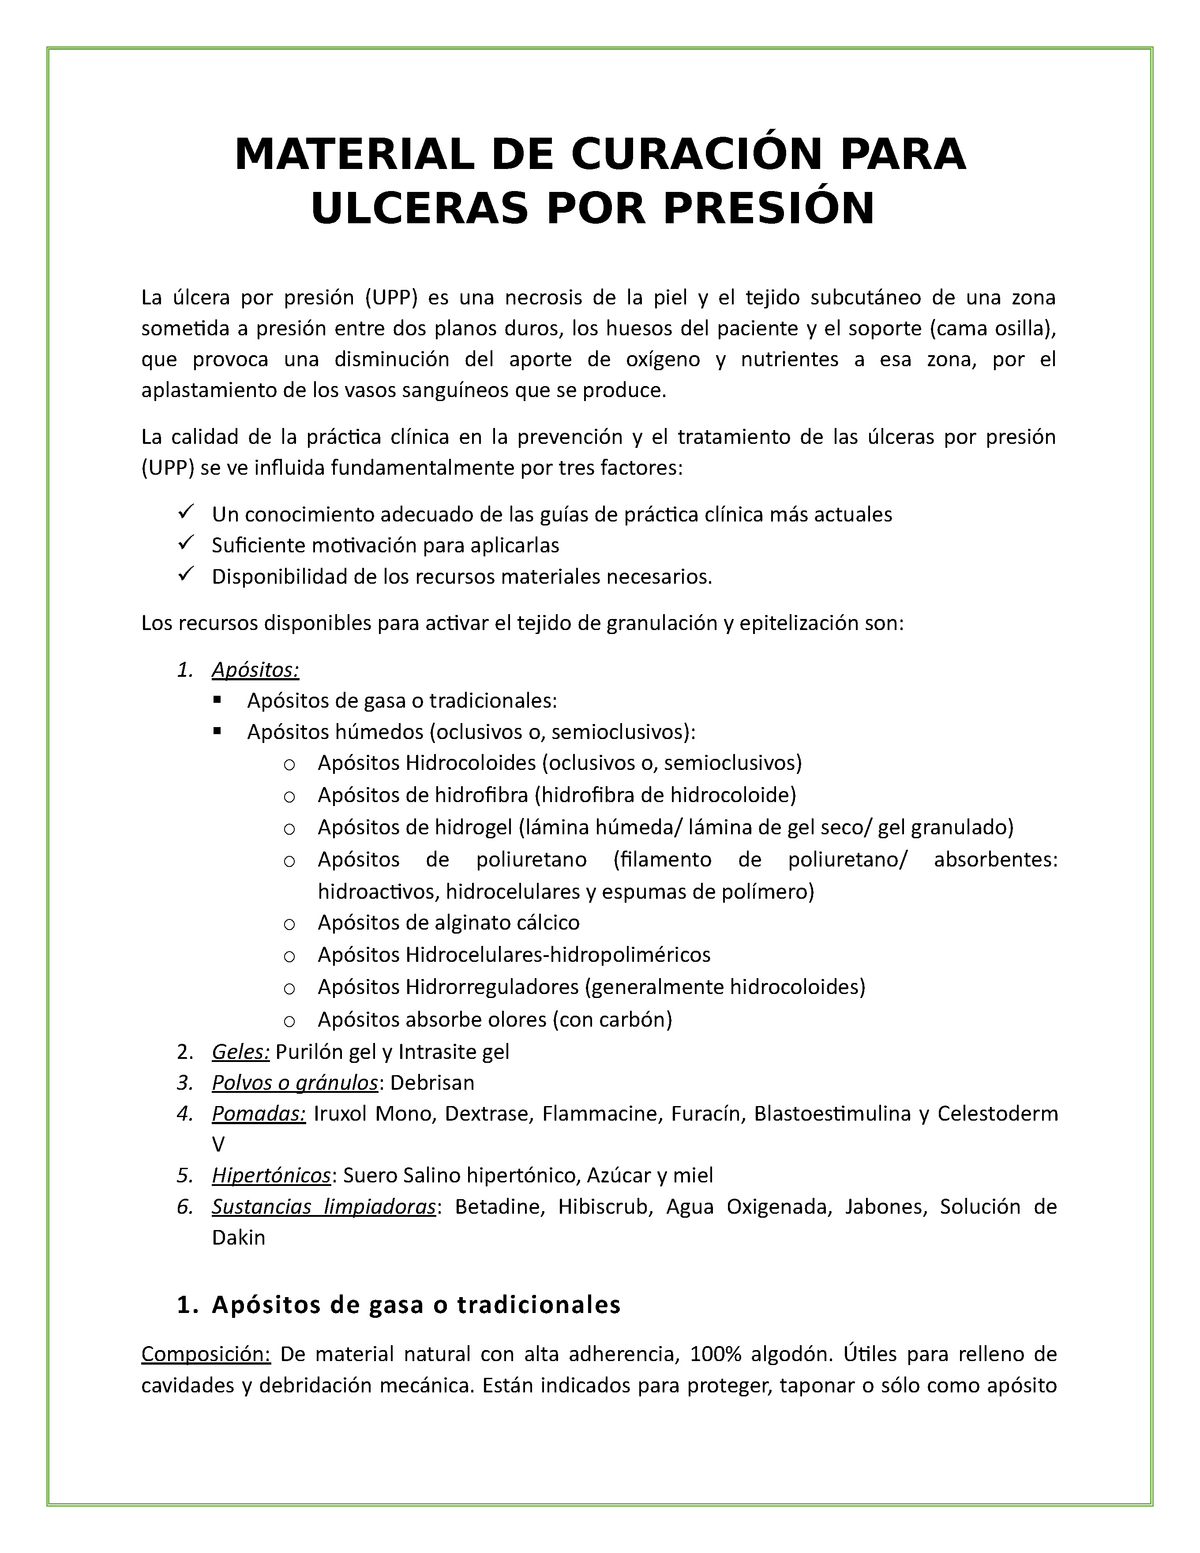 Material de Curación para Úlceras por Presión - MATERIAL DE CURACIÓN PARA  ULCERAS POR PRESIÓN La - StuDocu